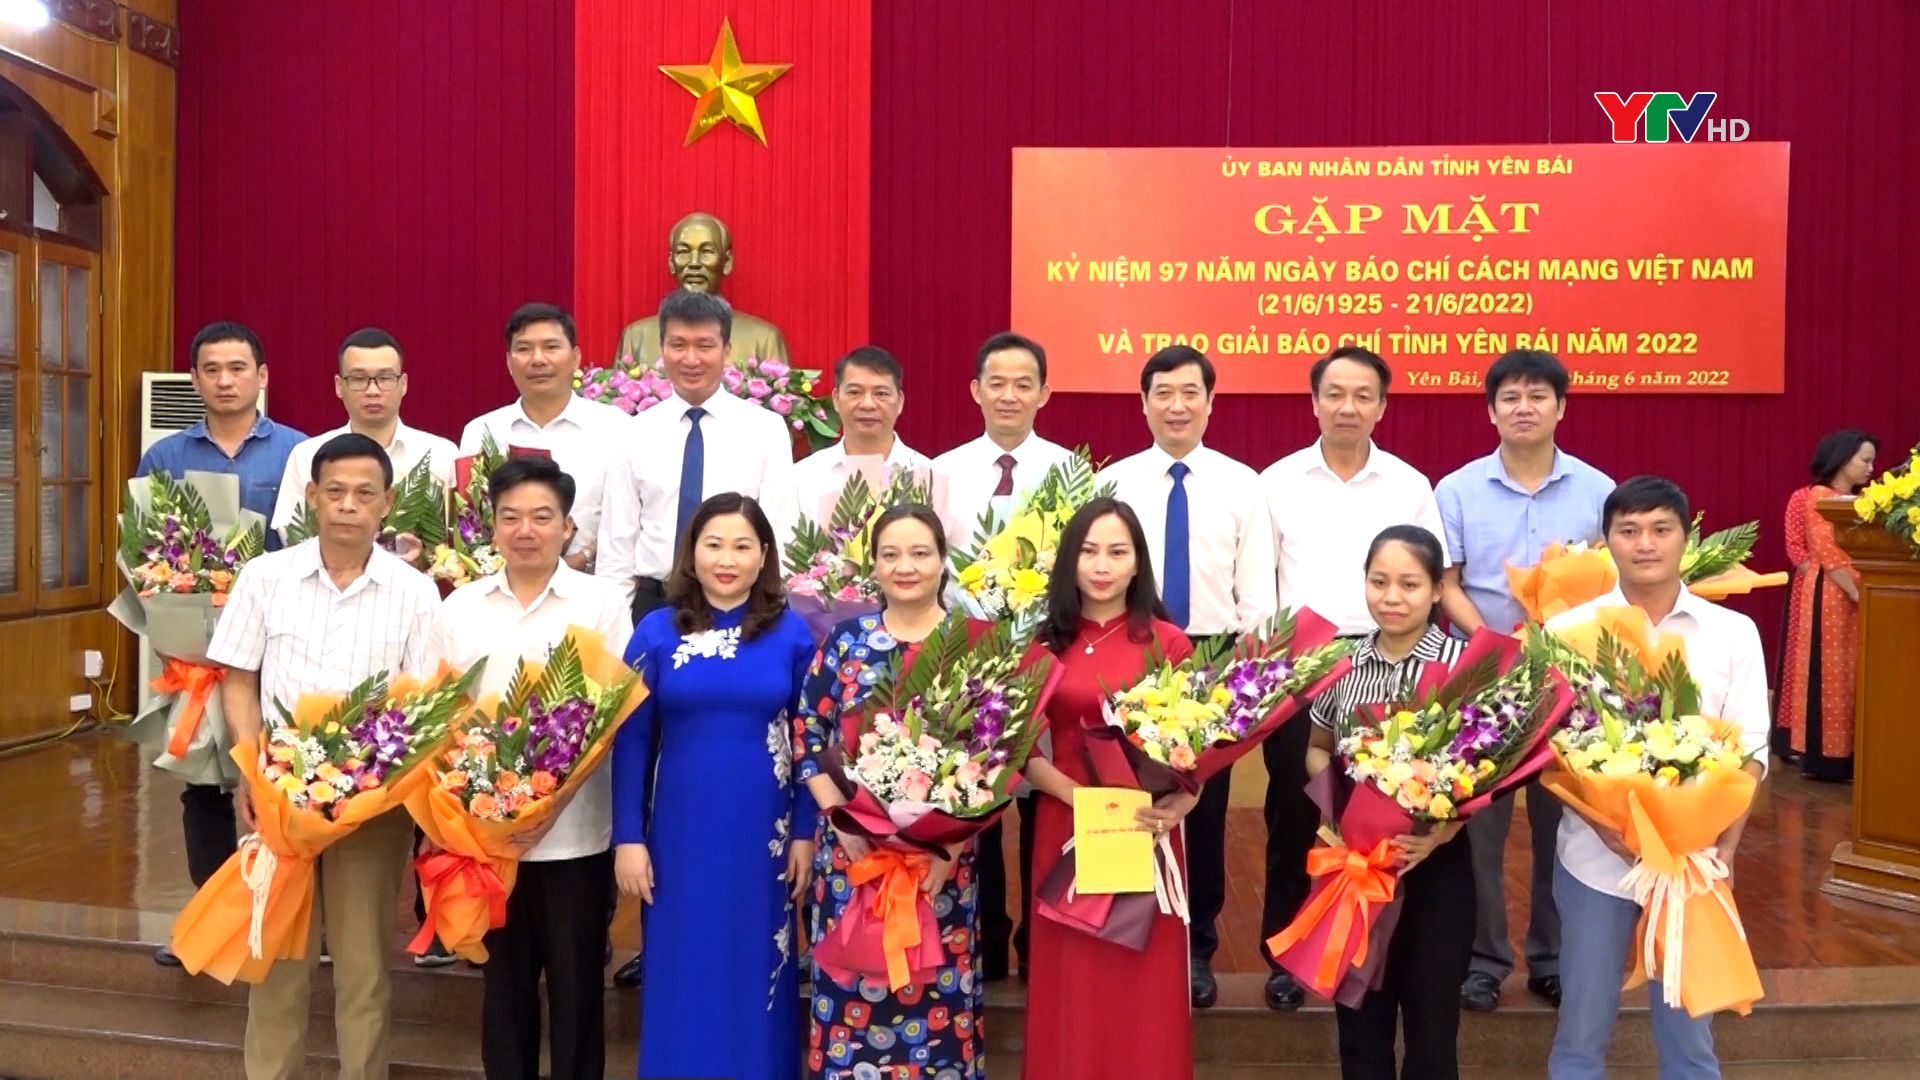 Tỉnh Yên Bái gặp mặt kỷ niệm 97 năm Ngày Báo chí cách mạng Việt Nam